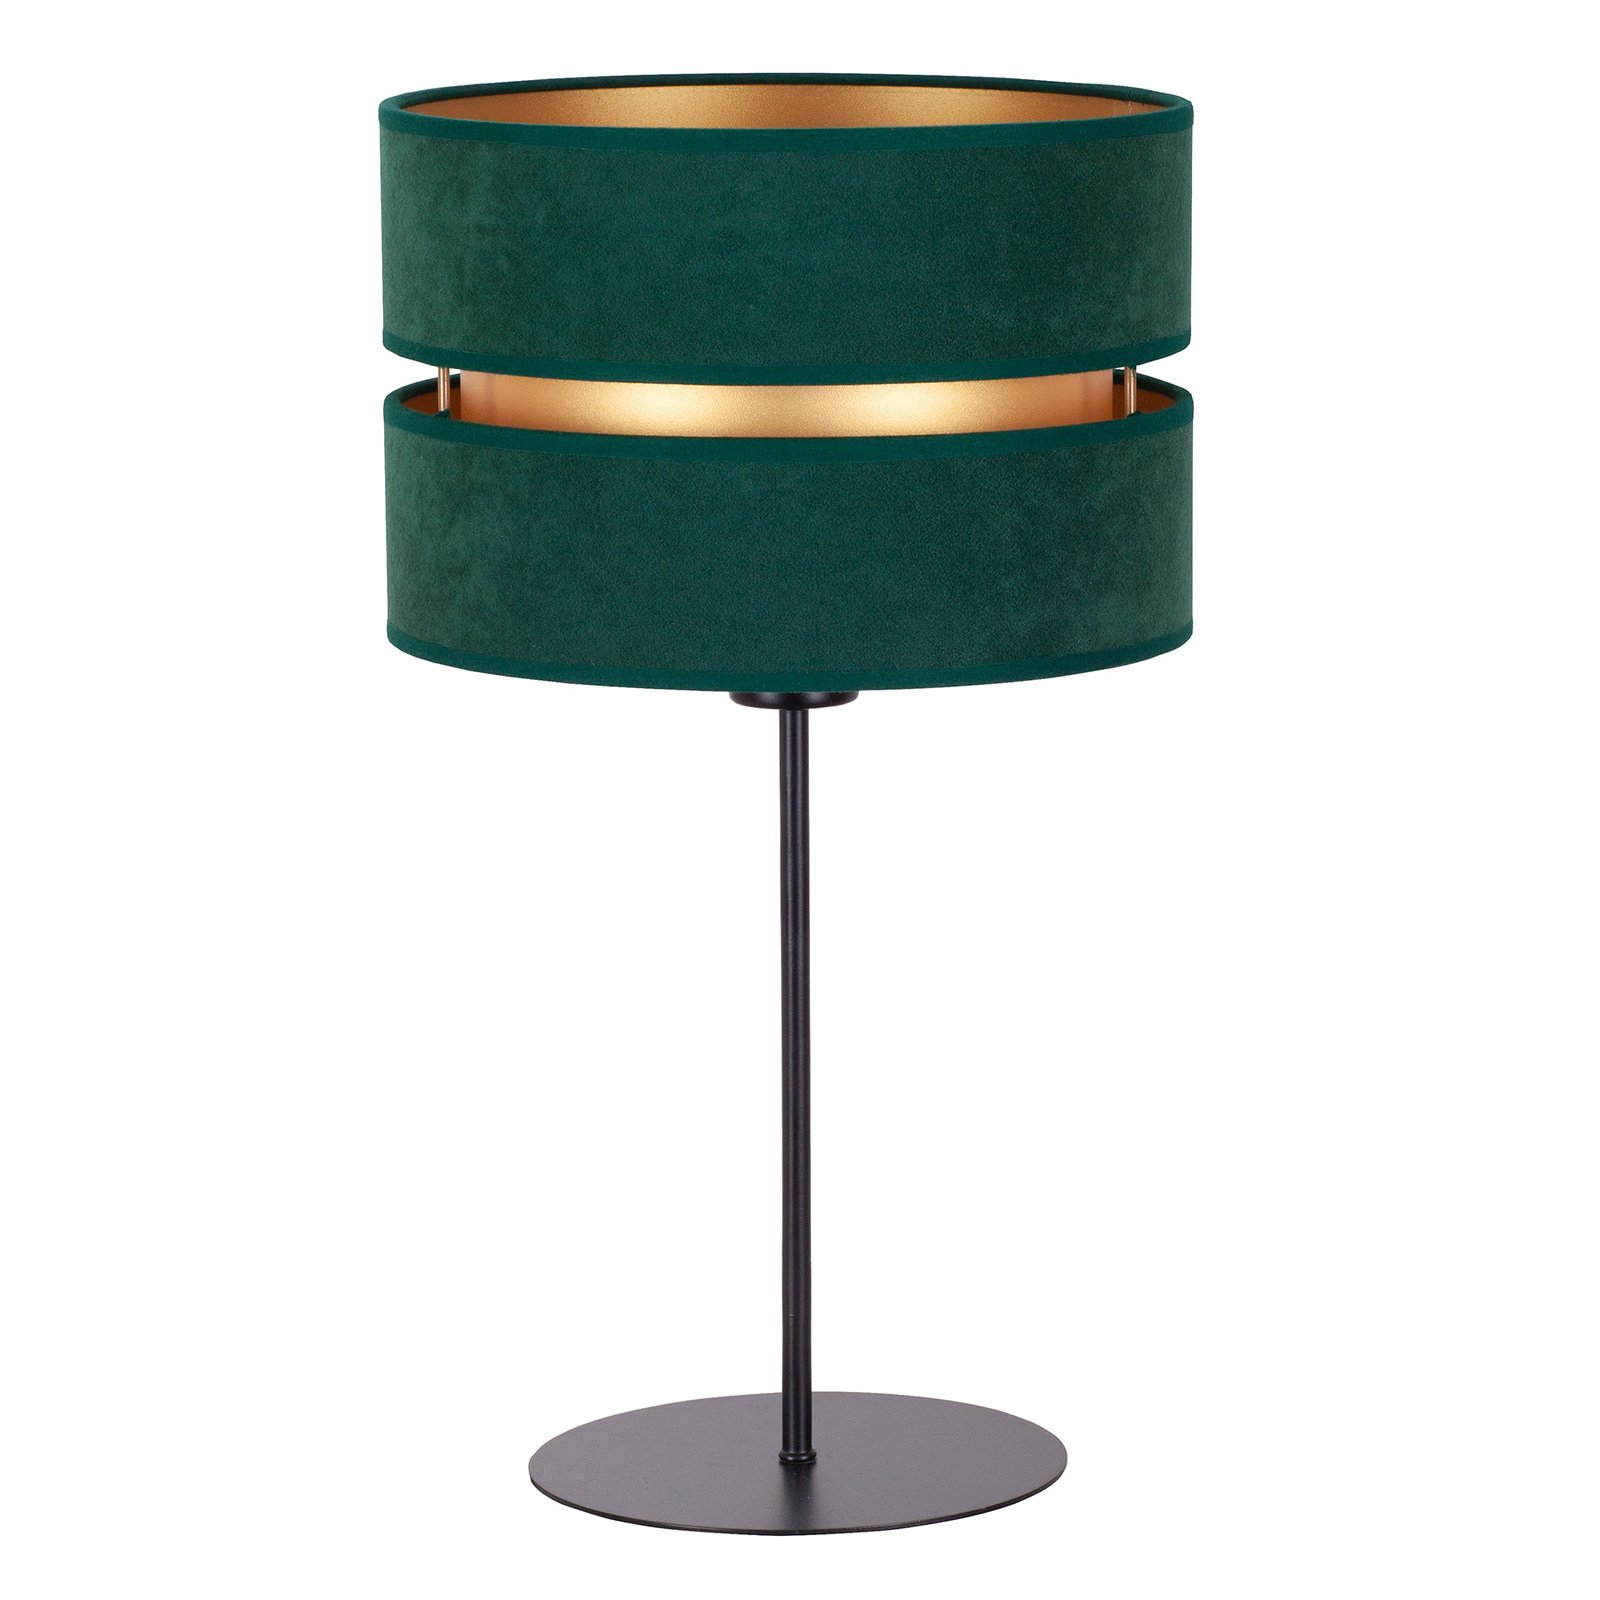 Tafellamp Duo, groen/goud, hoogte 50 cm